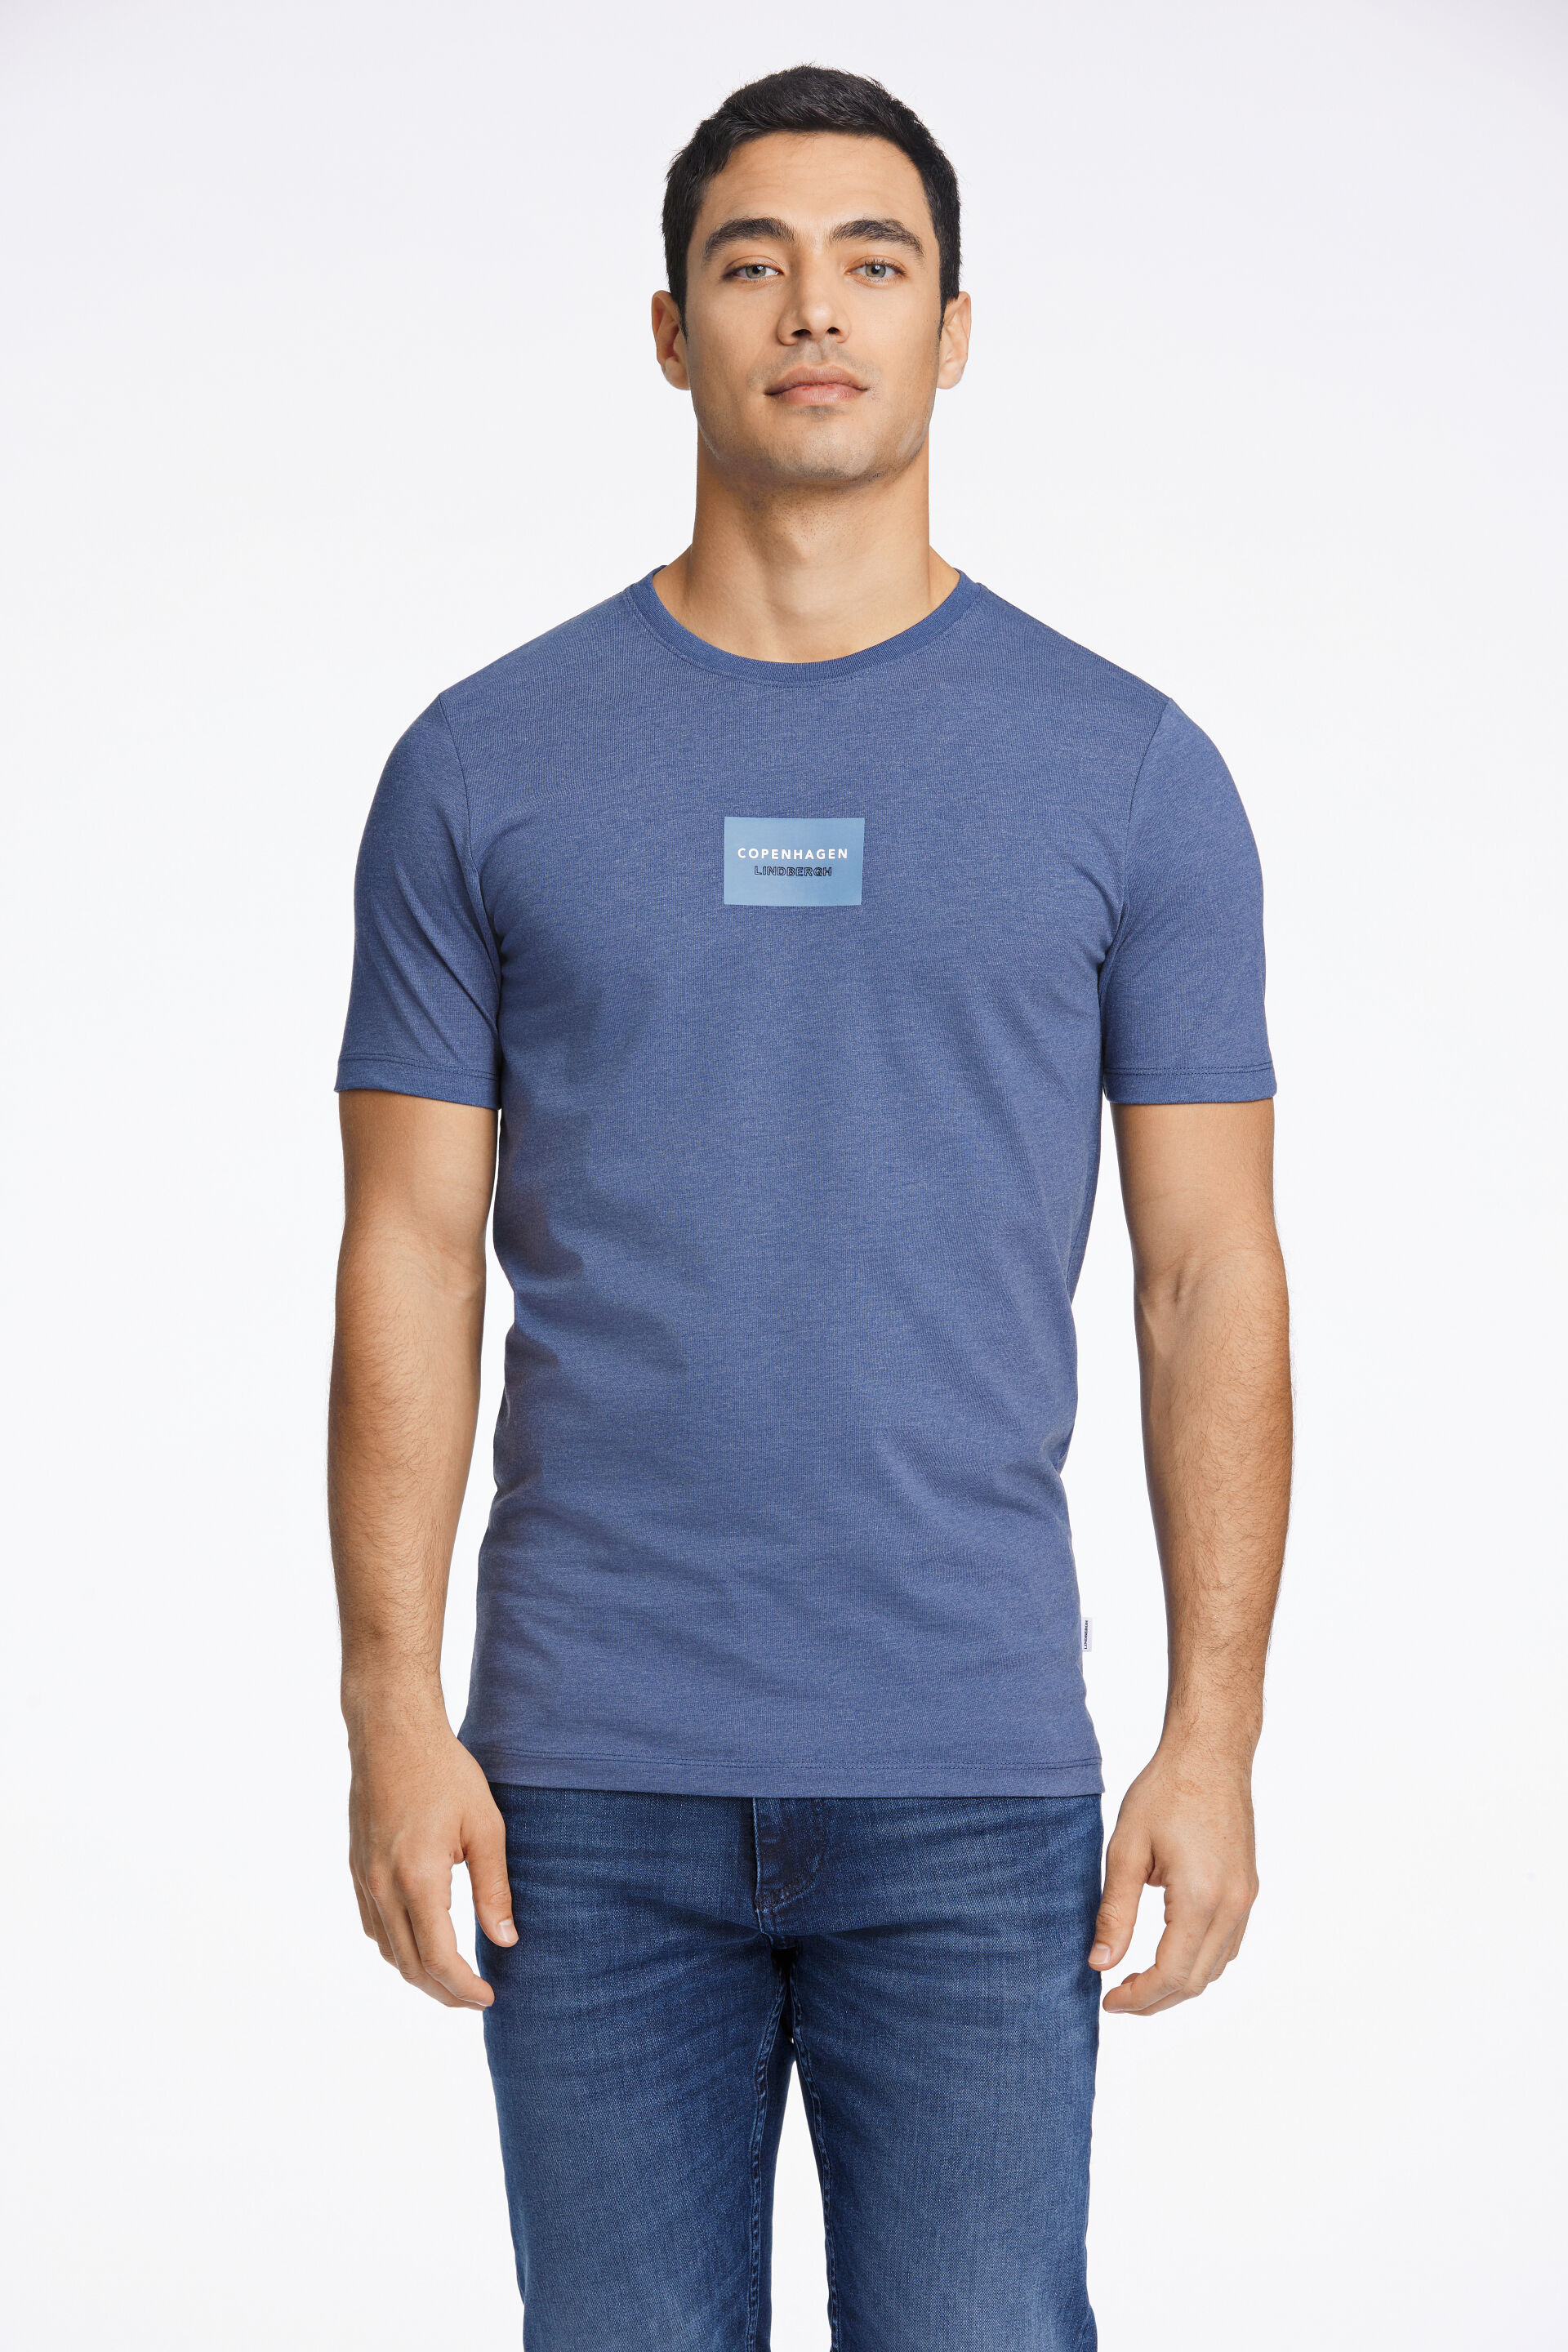 T-shirt T-shirt Blau 30-400015